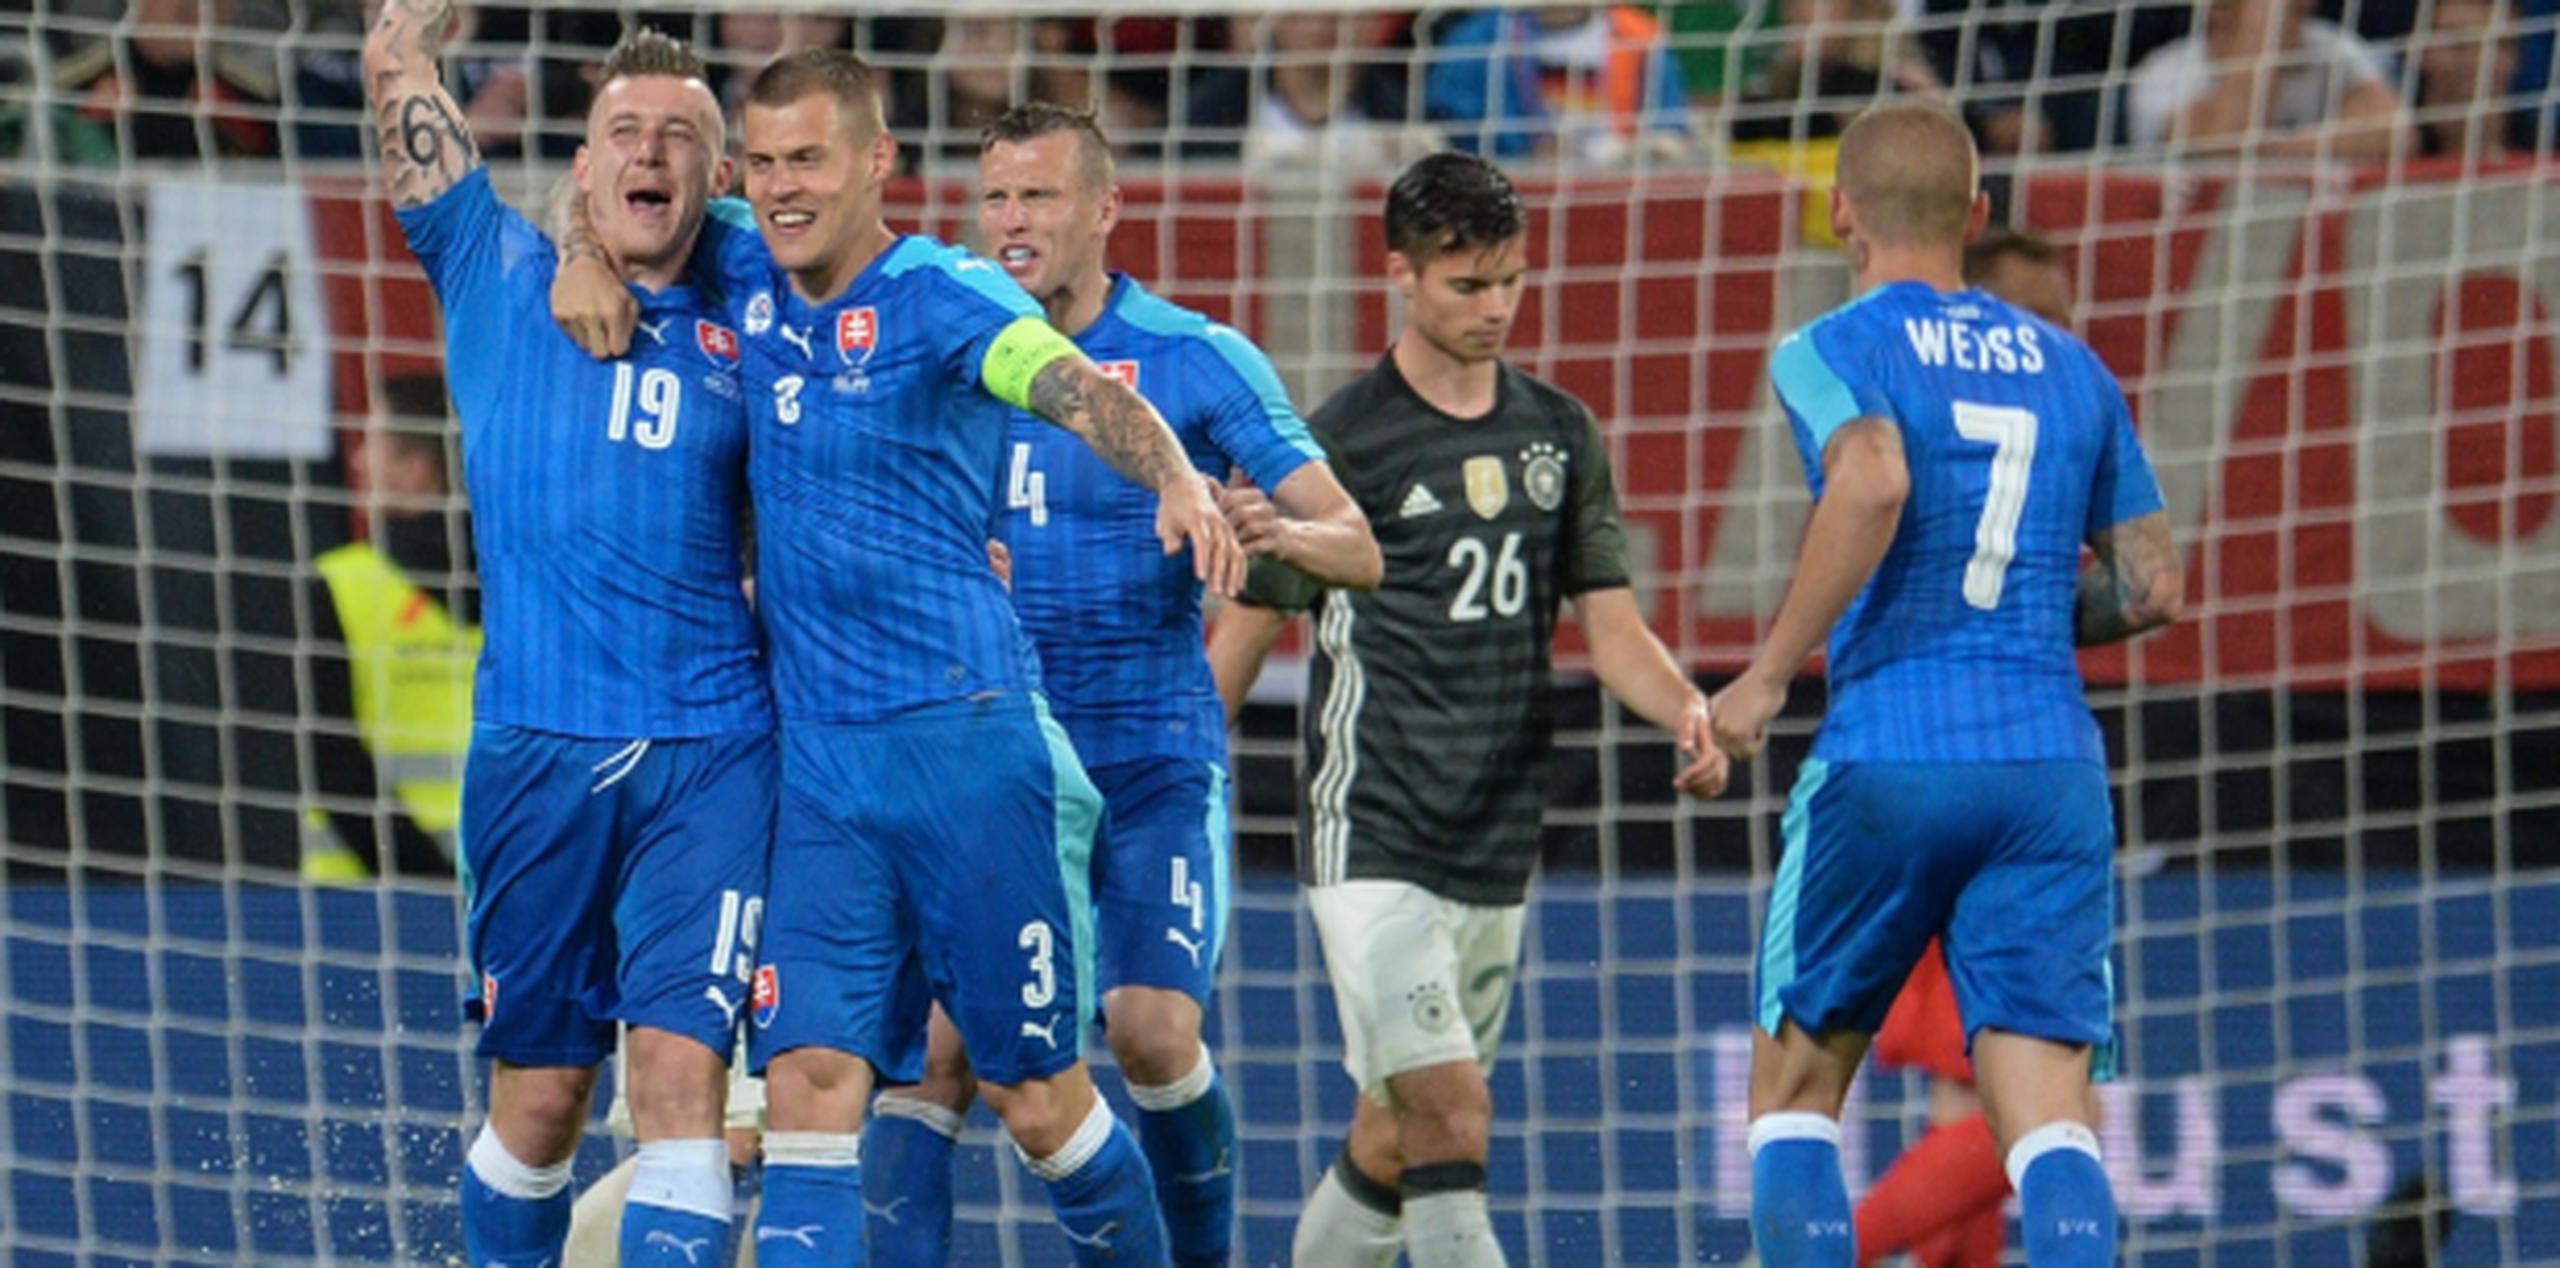 Jugadores de Eslovaquia celebran tras anotar su tercer gol frente a Alemania en un partido amistoso. (EFE/EPA/ANDREAS GEBERT)
